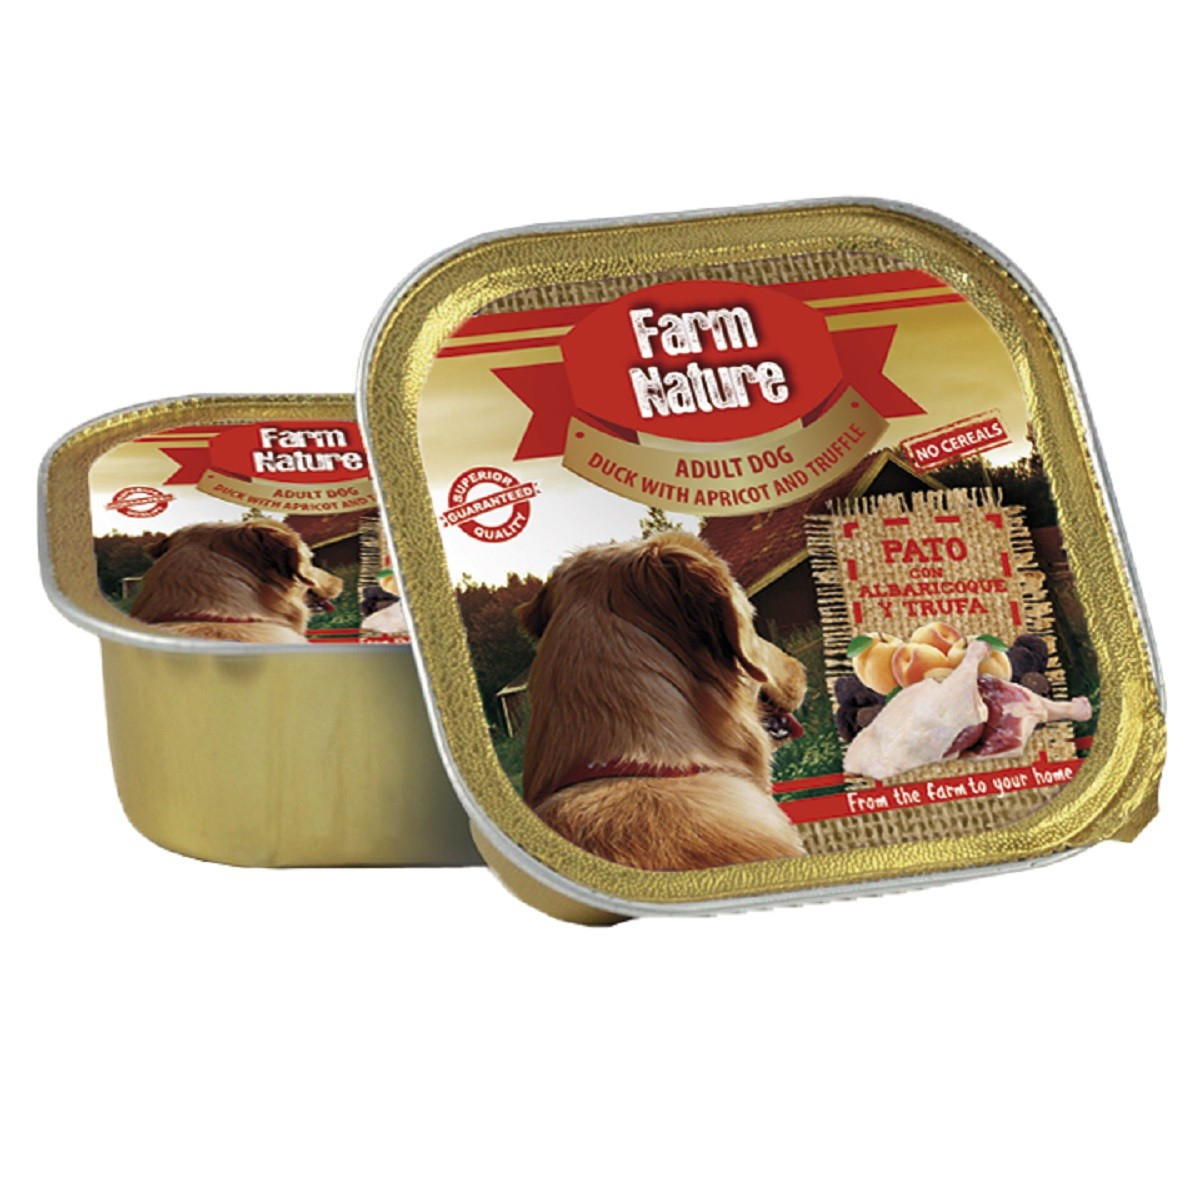 FARM NATURE Nassfutter Ente, Aprikose & Trüffel ohne Getreide für erwachsene Hunde - in2 Größen erhältlich